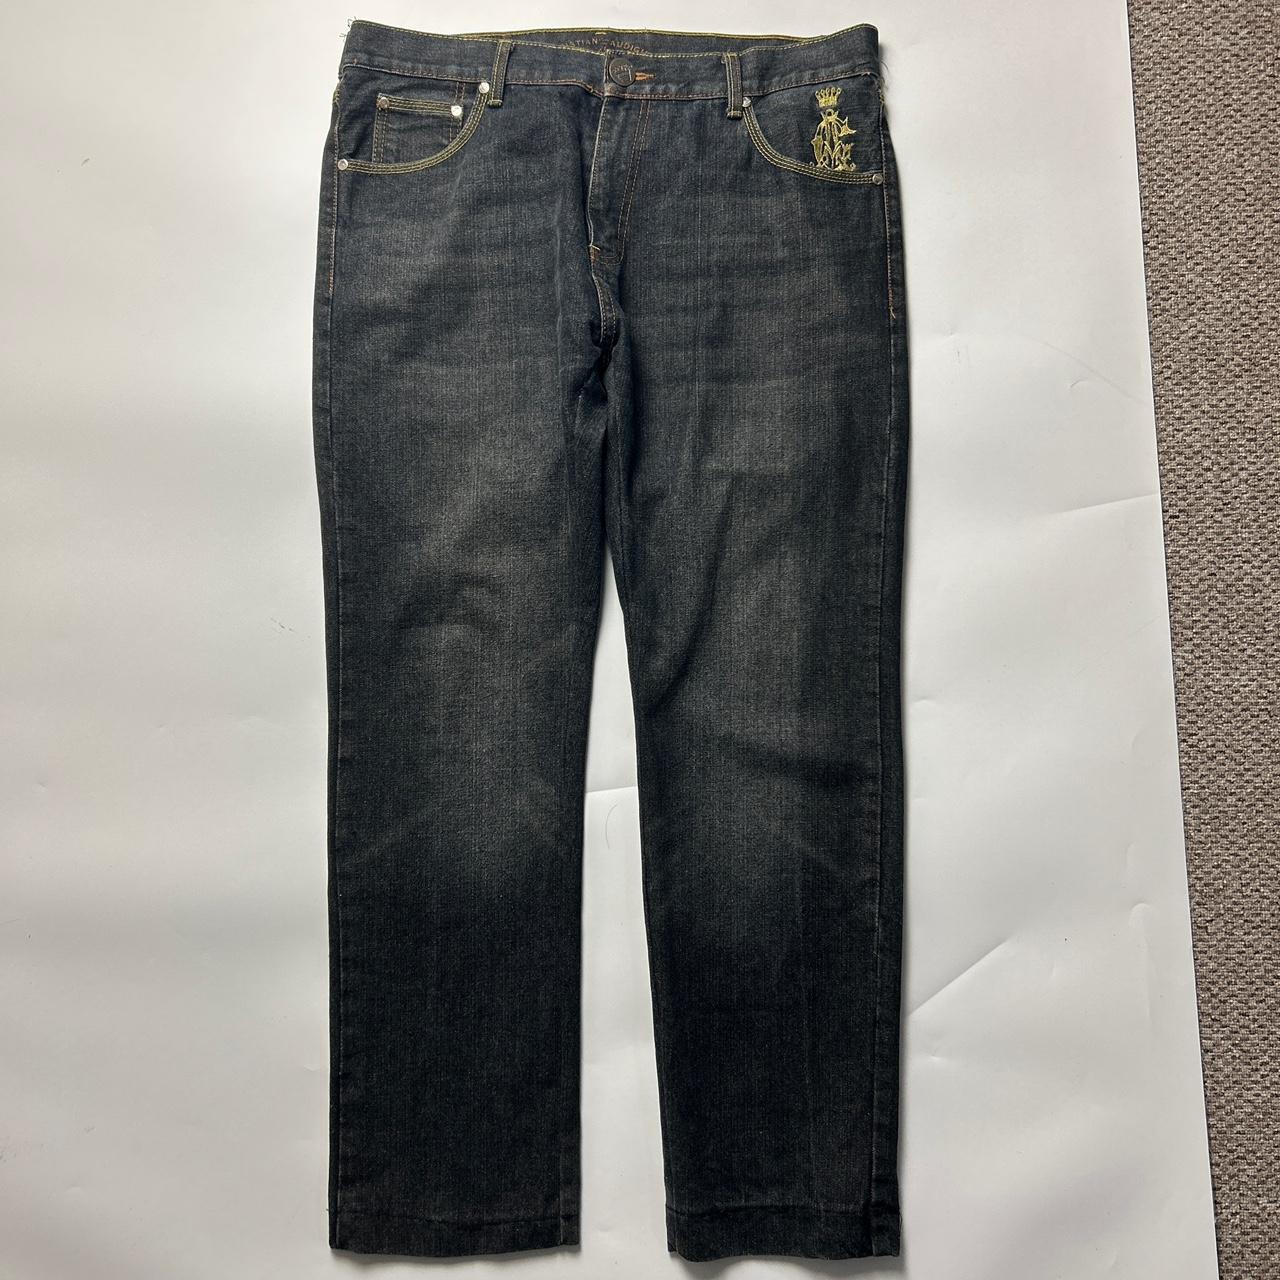 Christian Audigier Jeans (38")